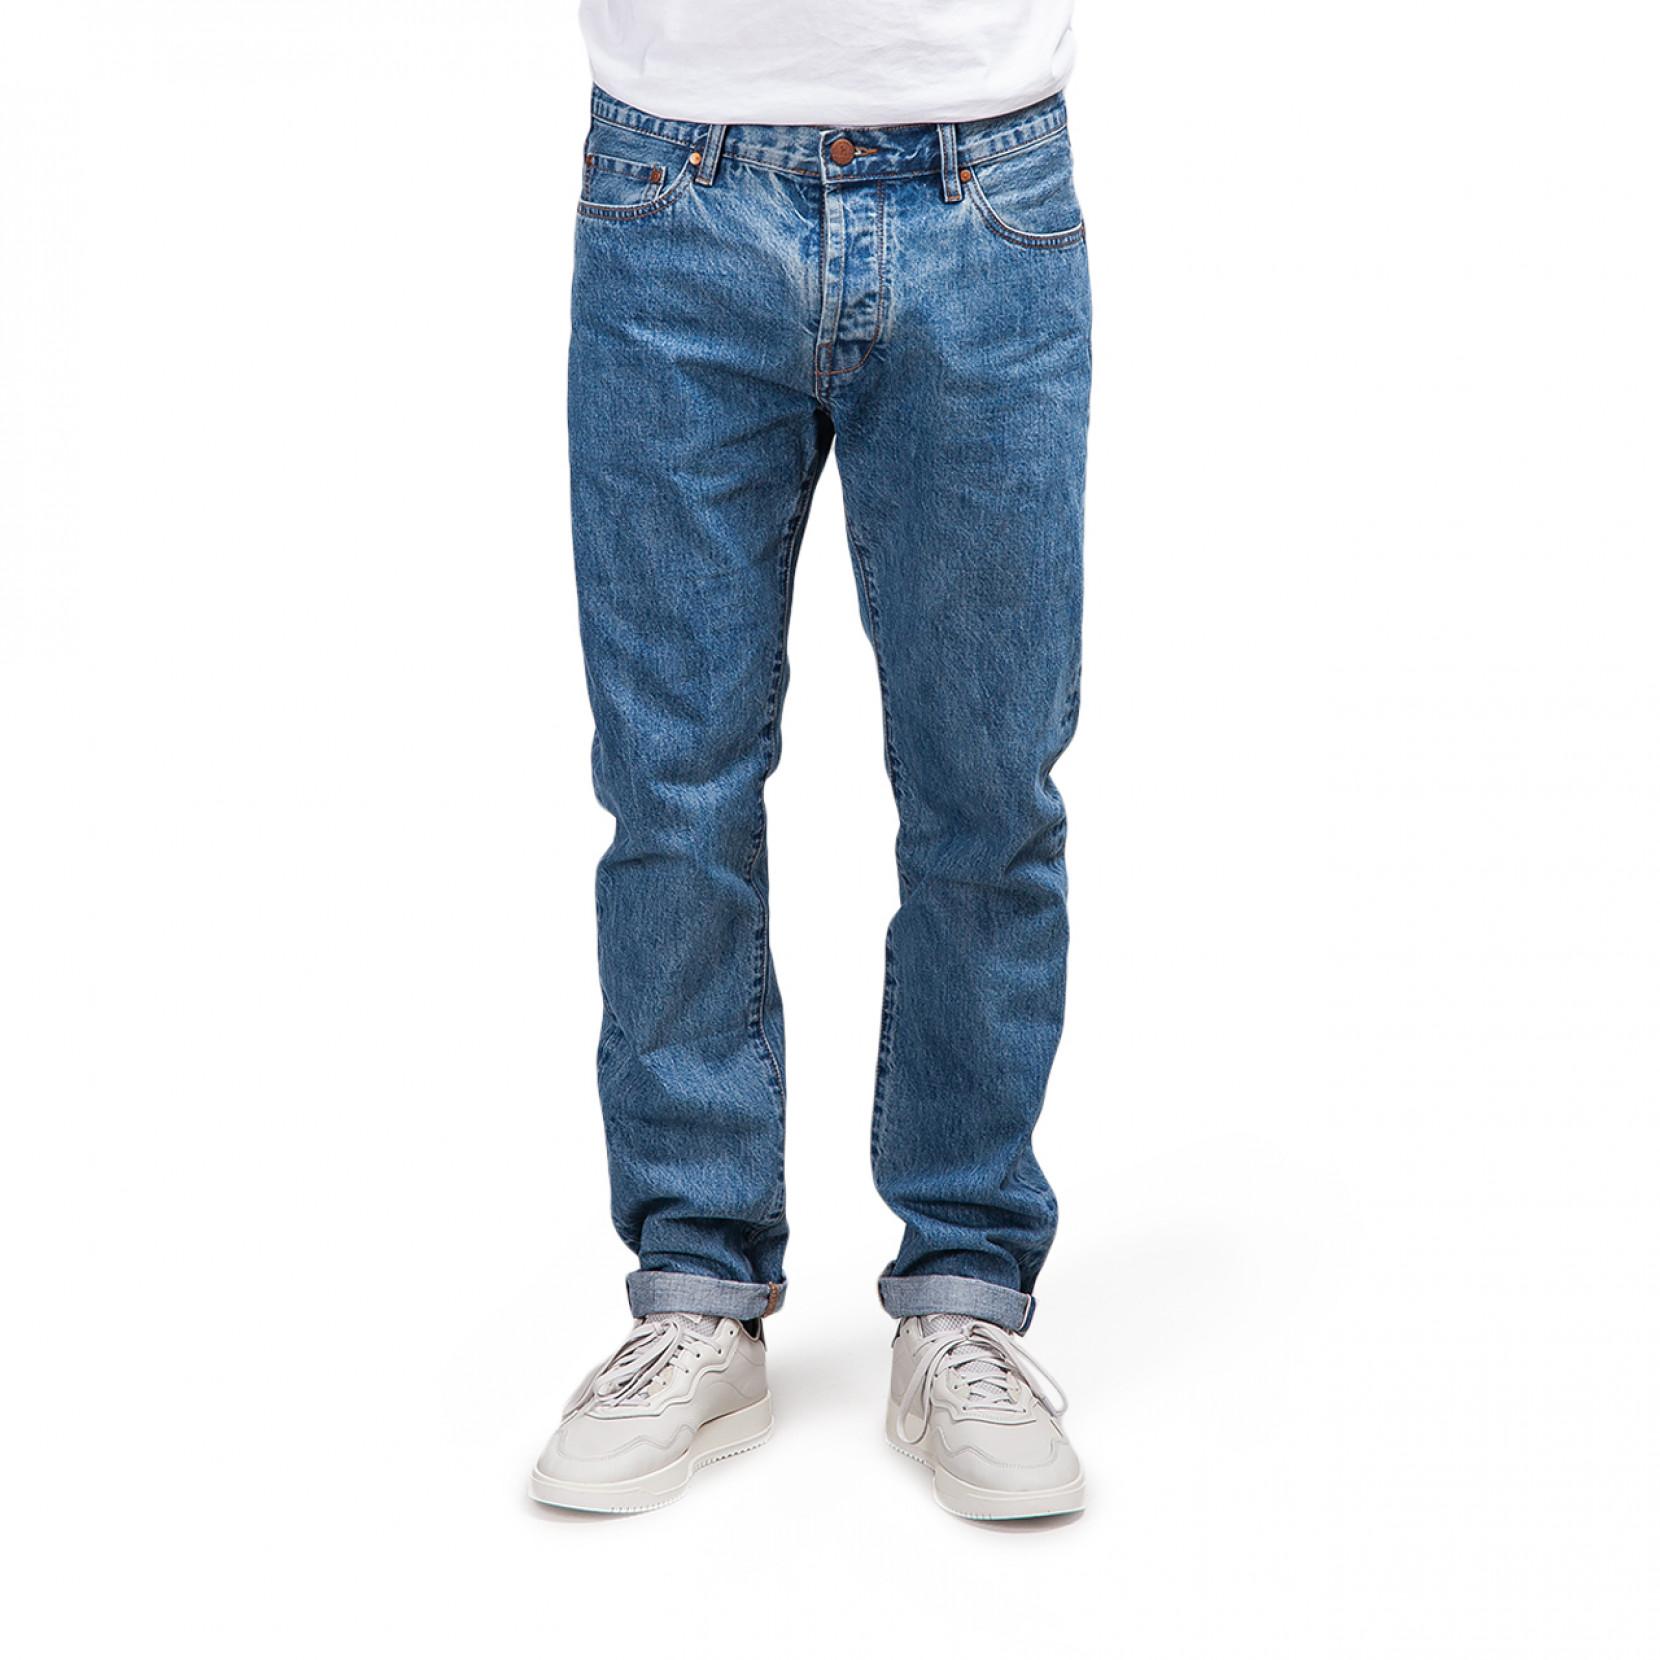 Han Kjobenhavn Denim Tapered Jeans in Blue for Men - Lyst